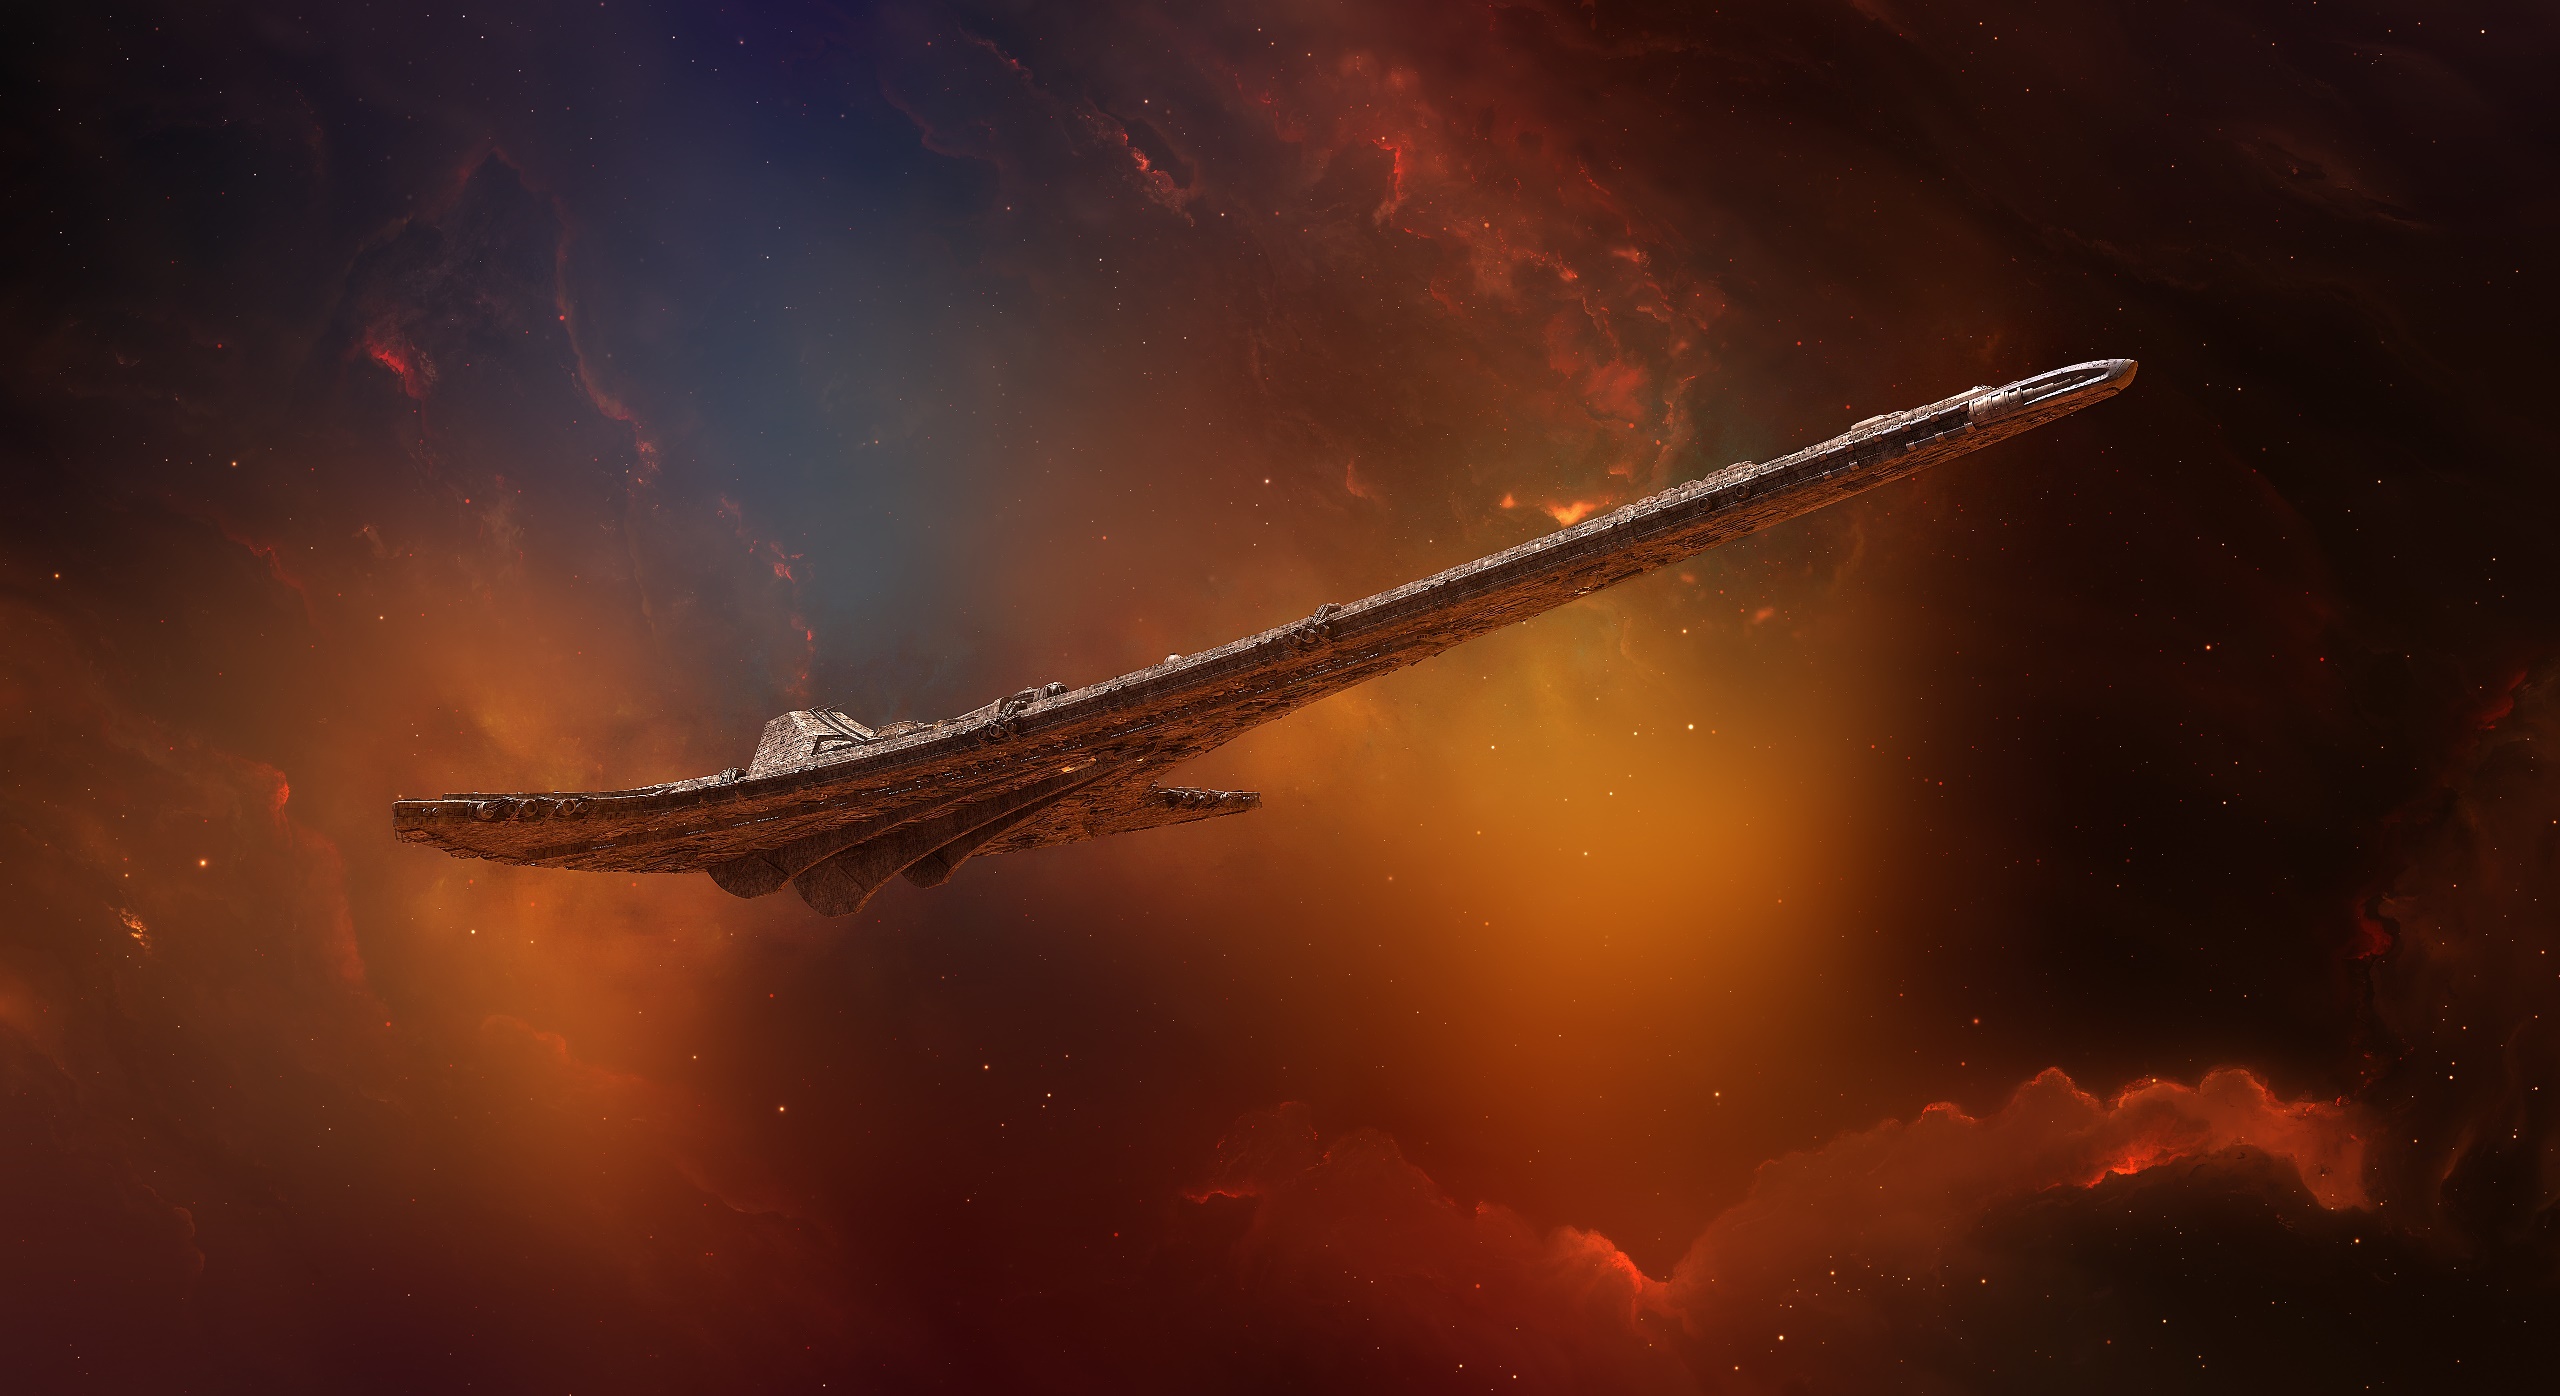 Space Space Art Science Fiction Artwork Stargate Universe Destiny Spaceship 2560x1396